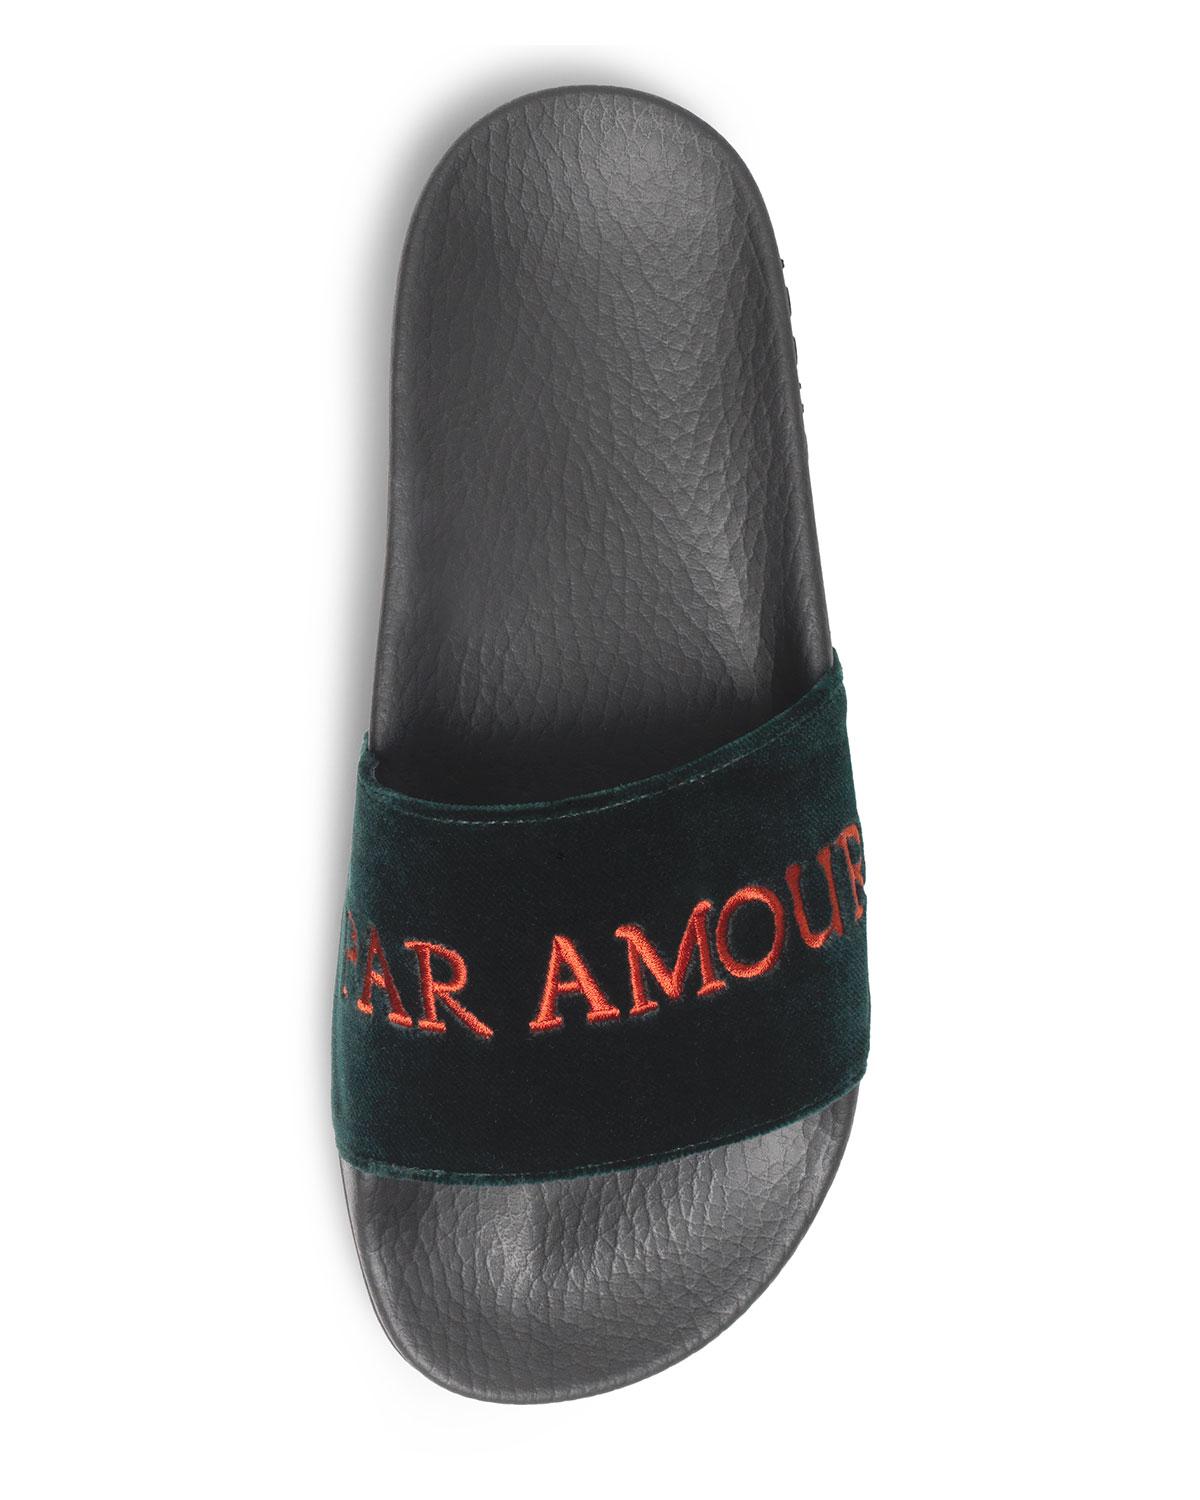  Gucci  Pursuit Embroidered Velvet Pool Slide Sandal  in 